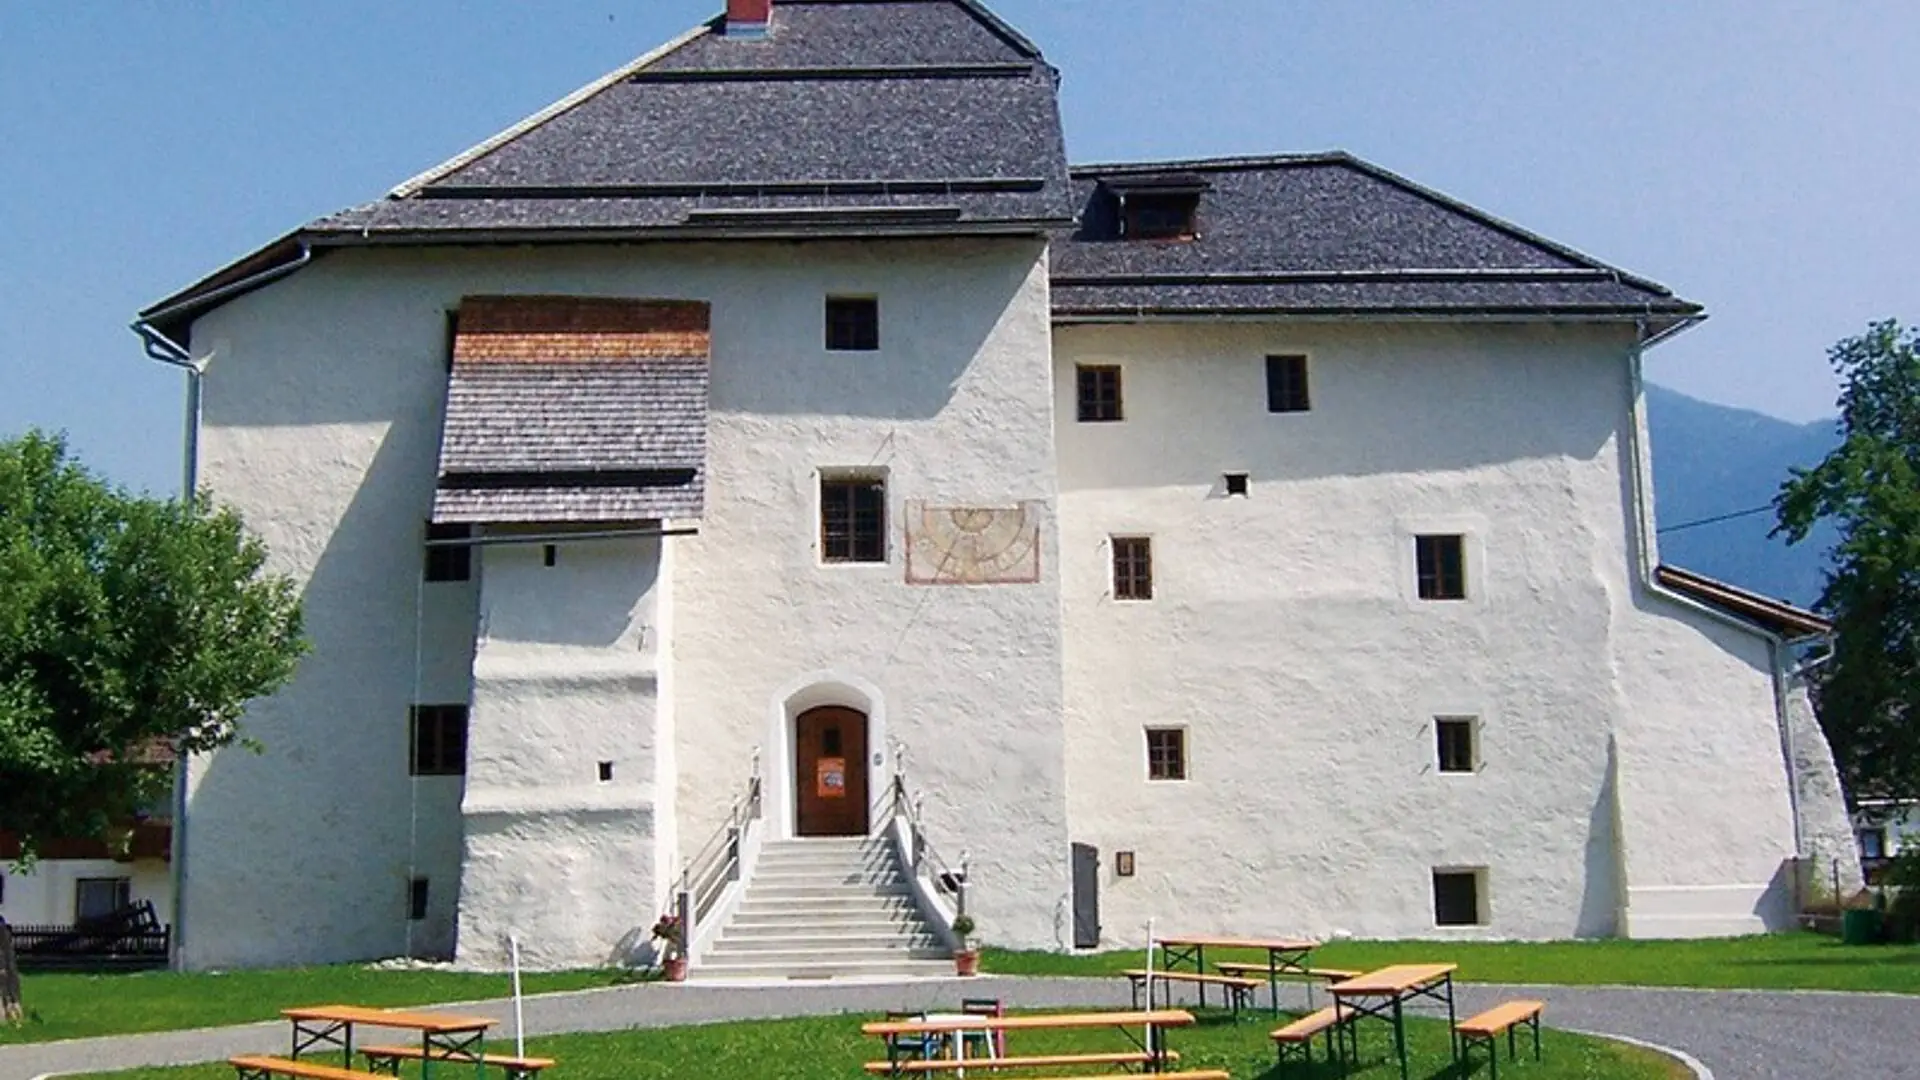 Gailtal Museum